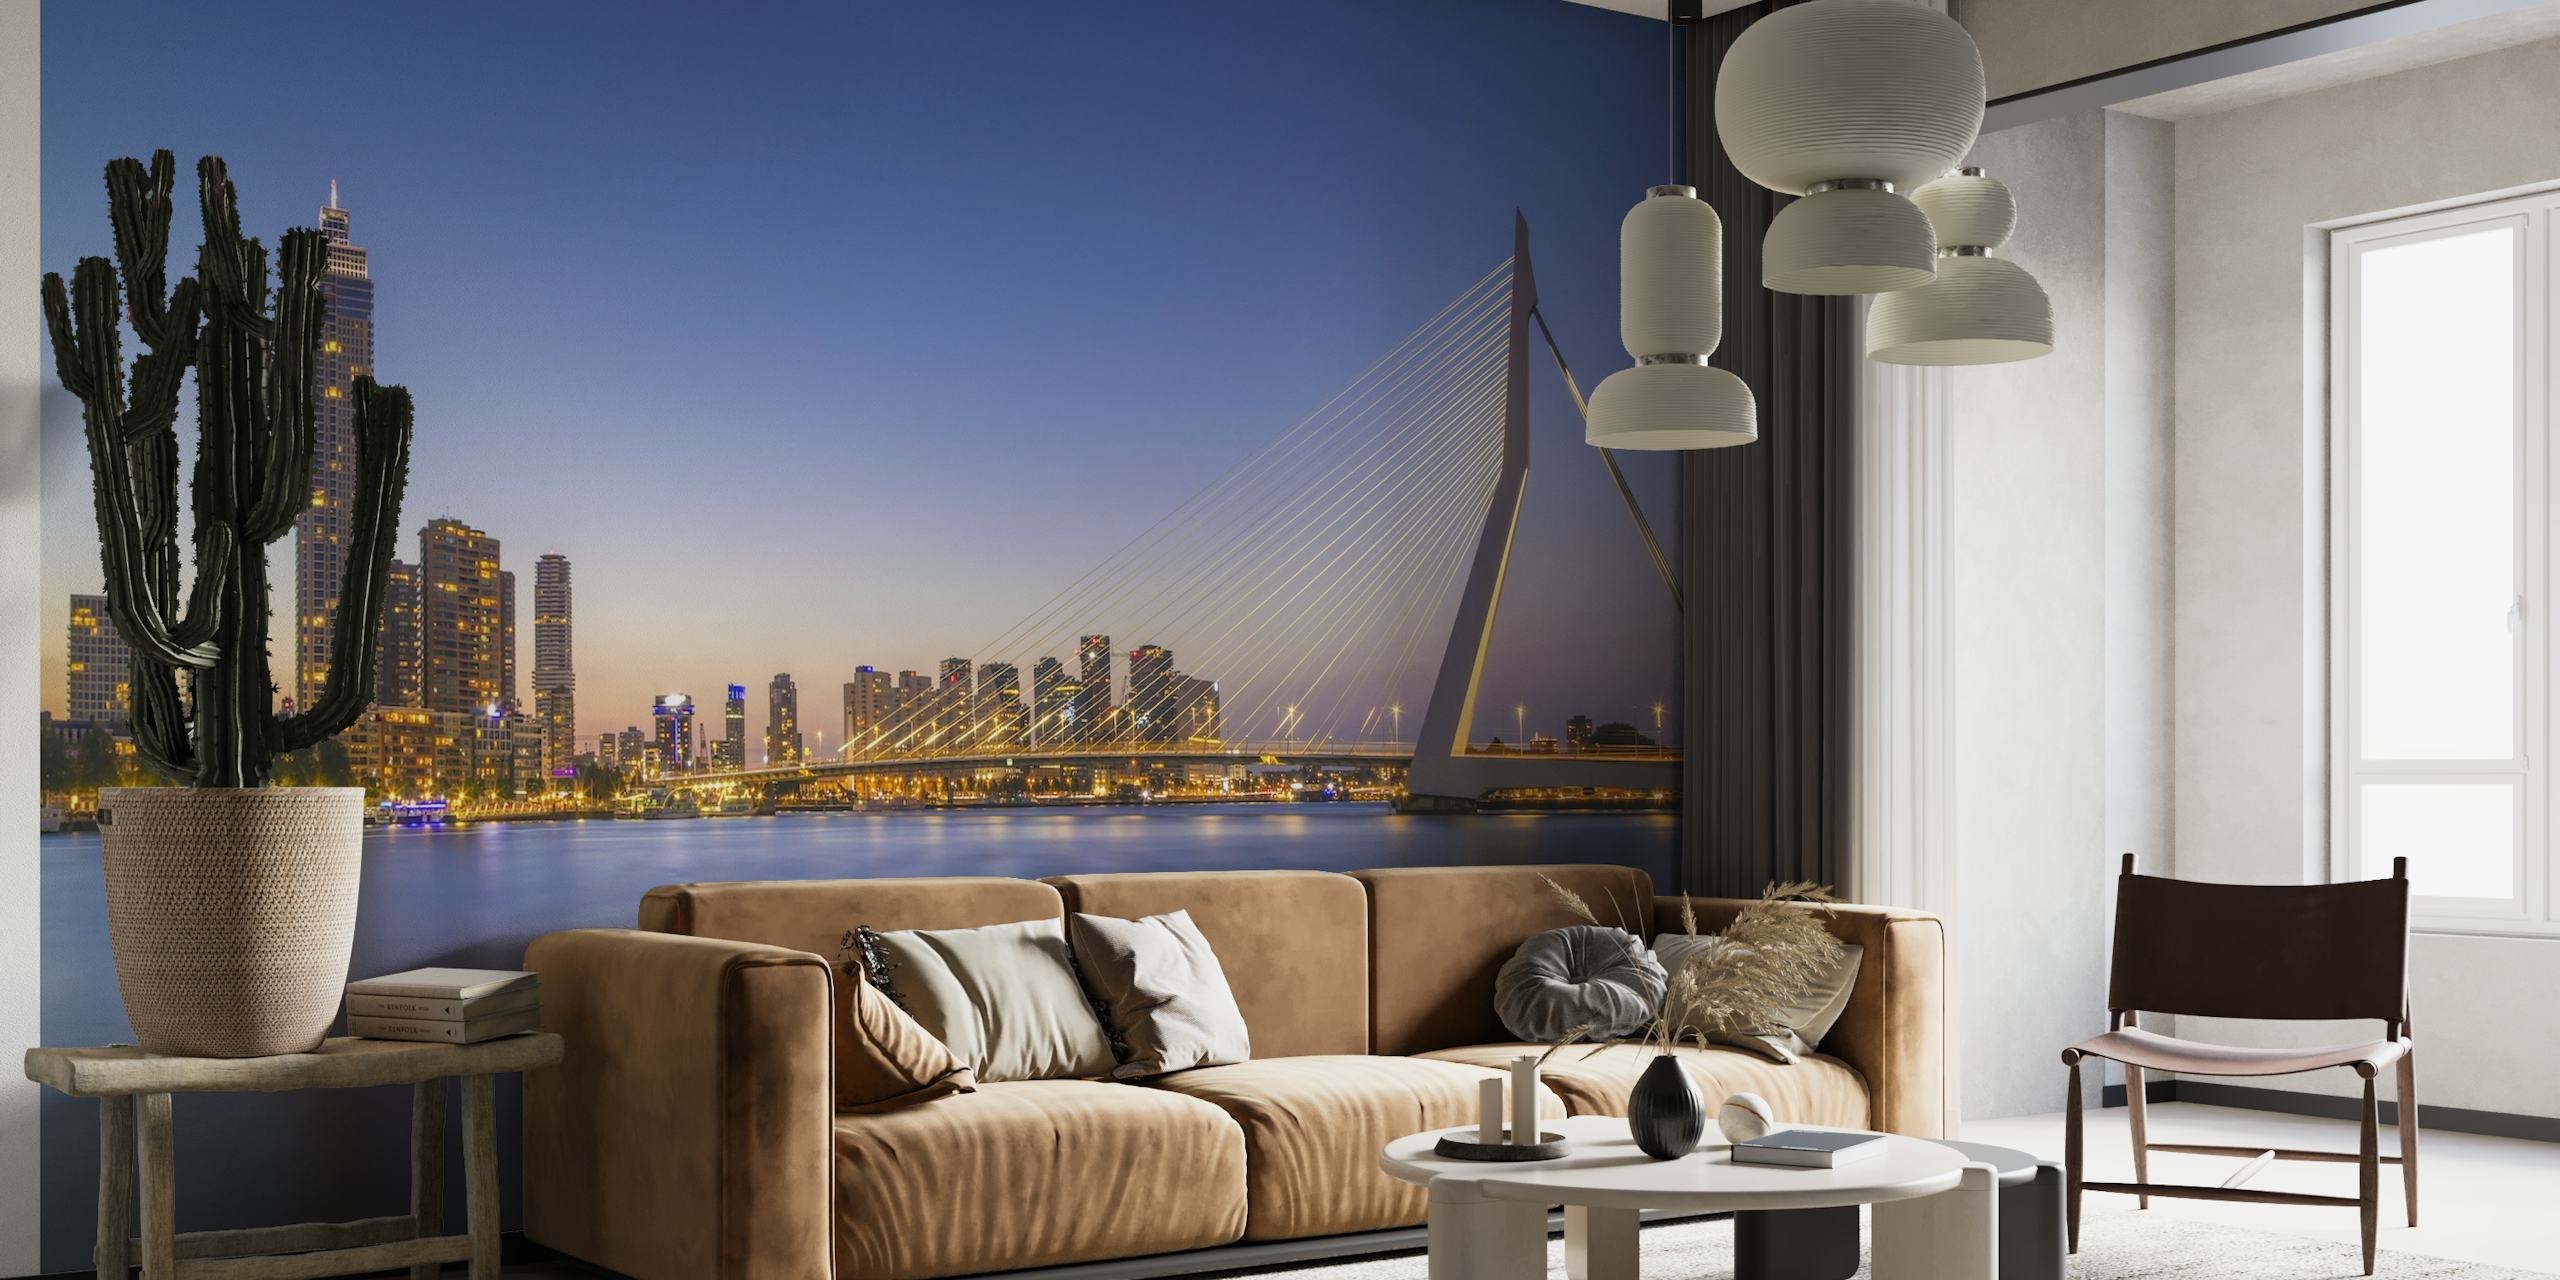 Fotobehang van de Erasmusbrug en de skyline van Rotterdam in de schemering met reflecterend water